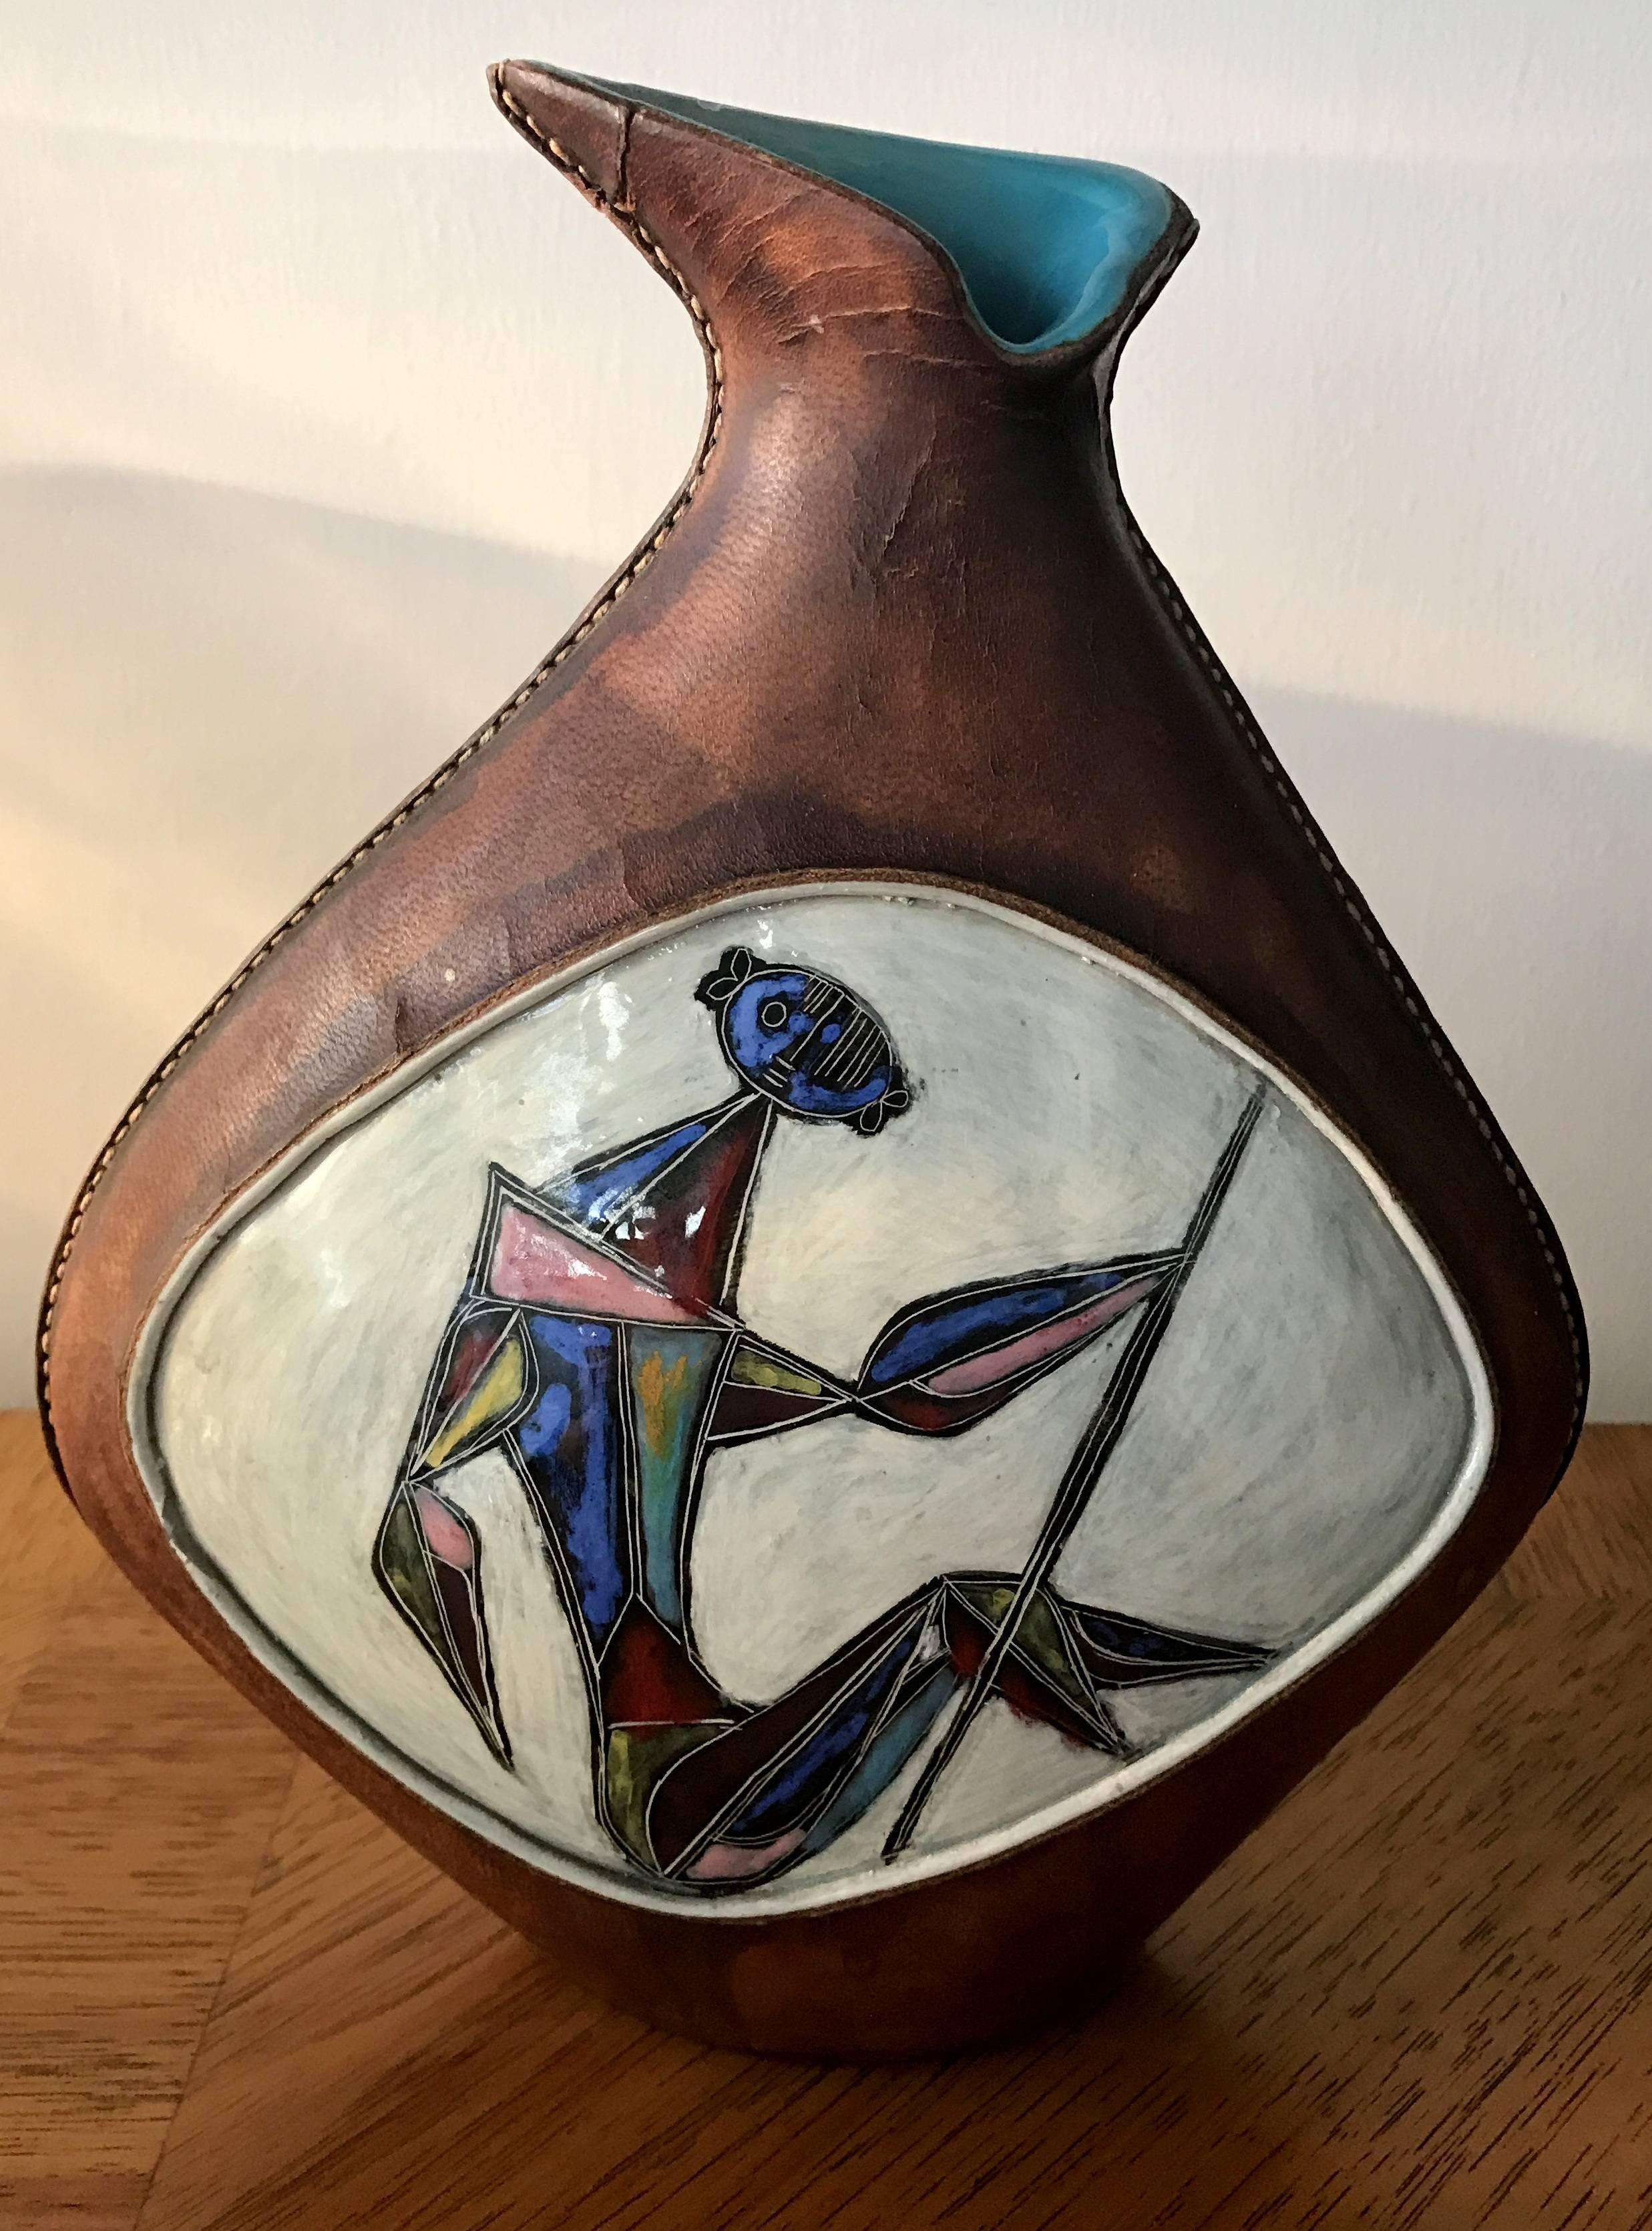 Signiert Marcello Fantoni Italienisch glasierte Keramik-Vase in Leder mit kubistischen Krieger Figur ummantelt.